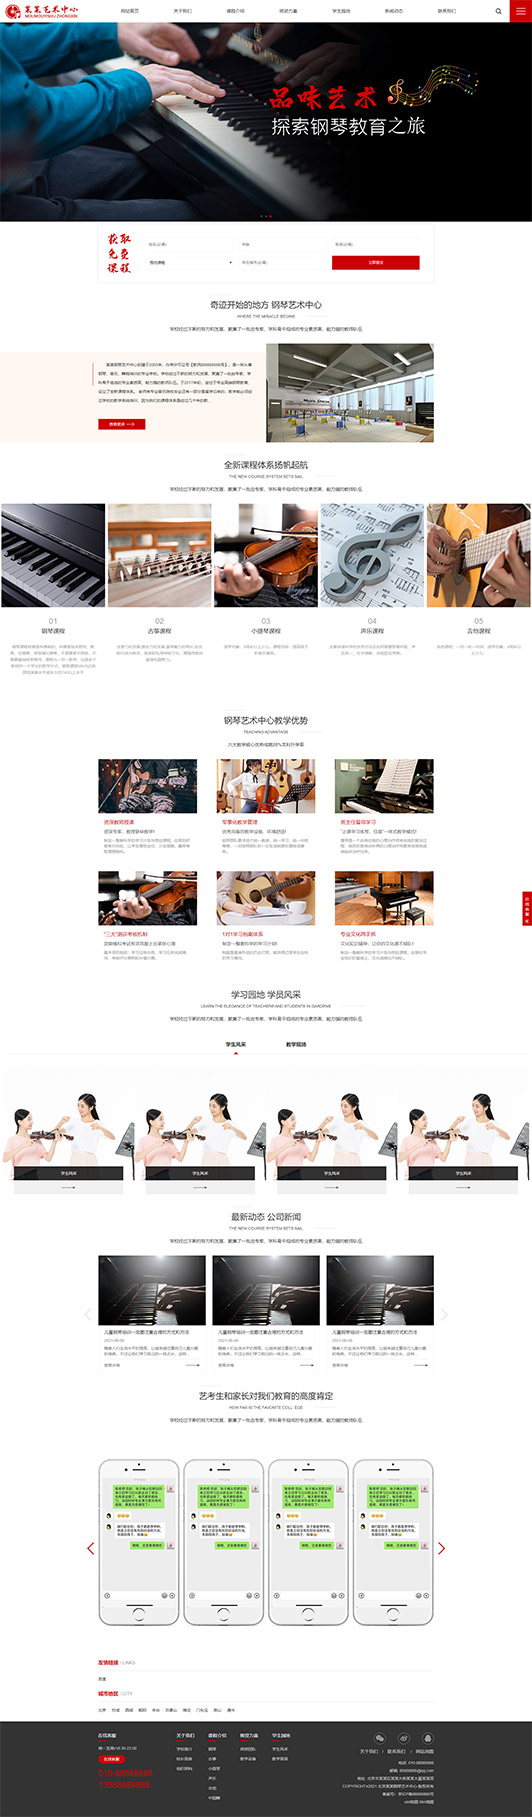 新疆钢琴艺术培训公司响应式企业网站